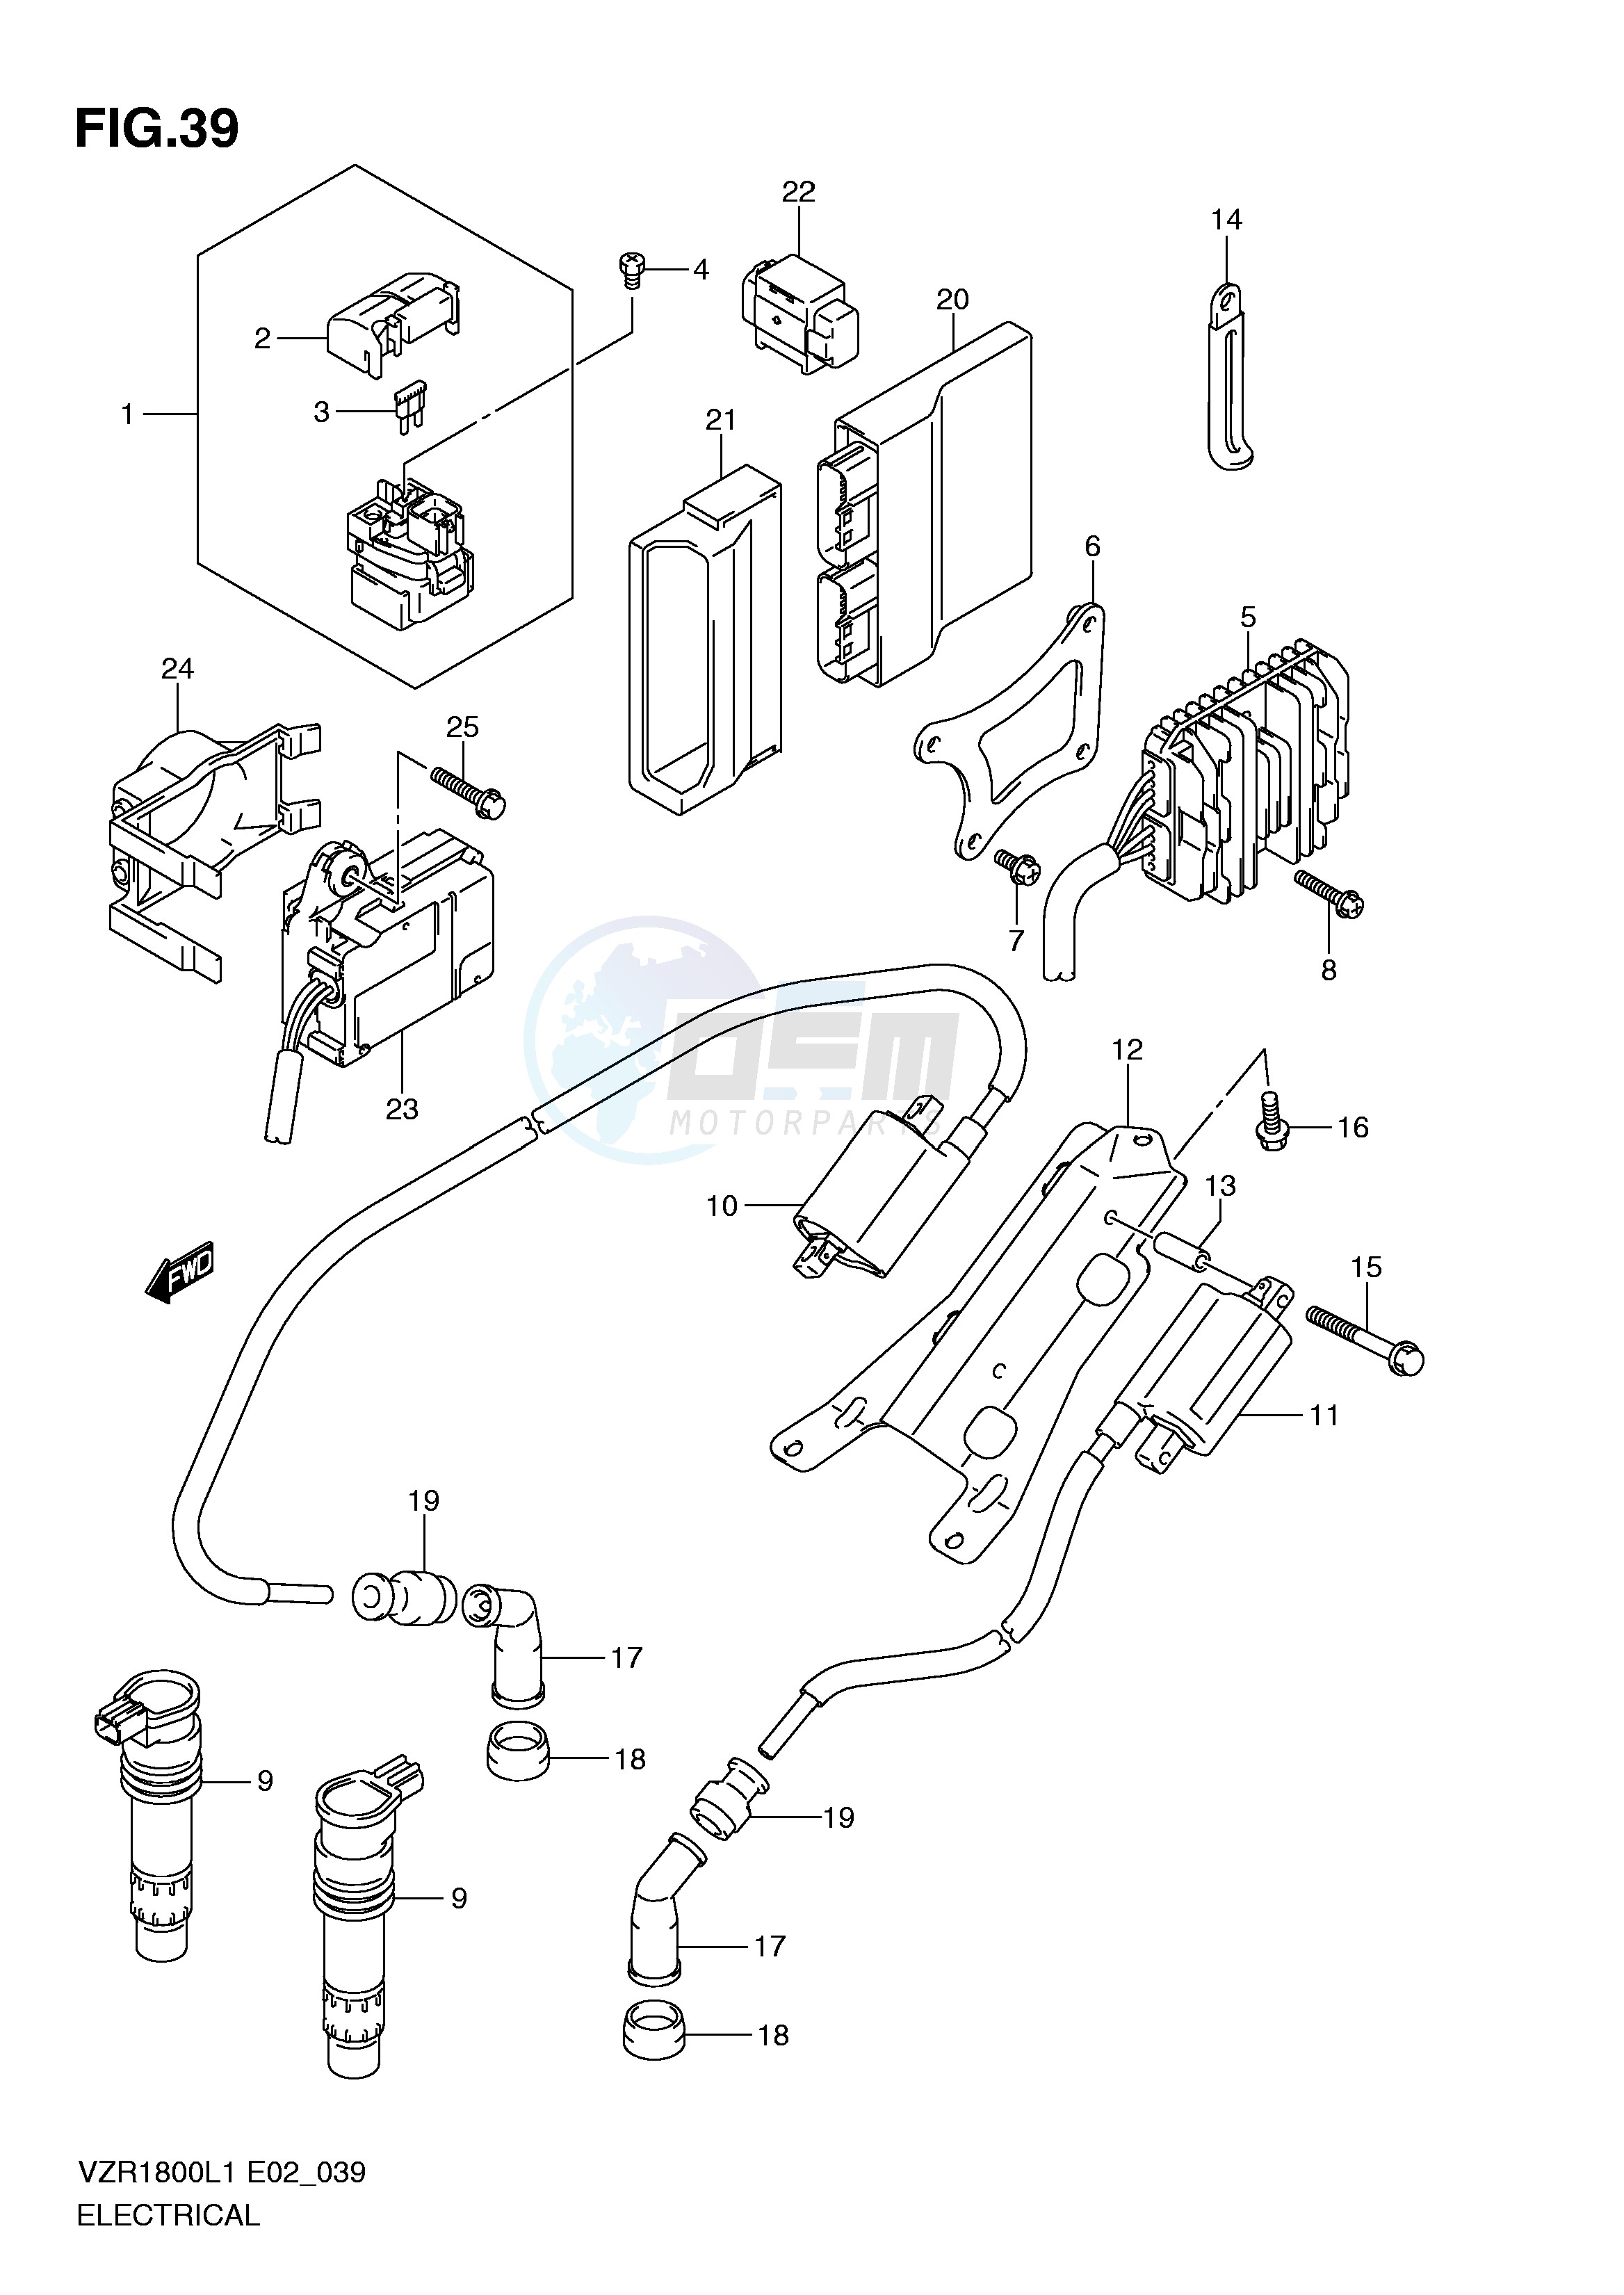 ELECTRICAL (VZR1800L1 E19) blueprint